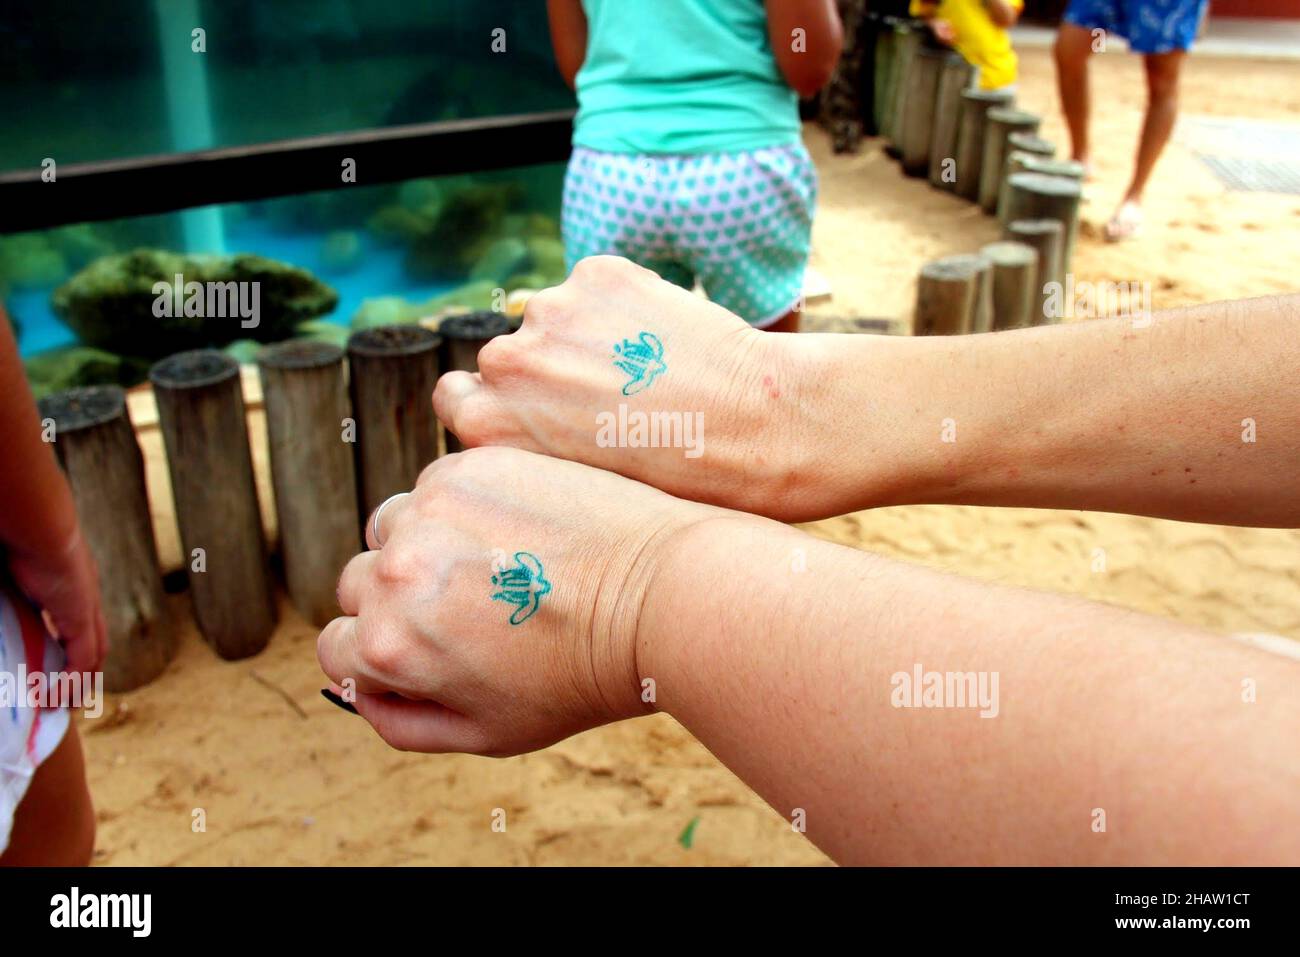 Projet Tamar : entrée au parc, lavage, tatouage écologique sur le dos de deux mains femelles.Praia do forte, Mata de São João - Bahia.Juillet 2013. Banque D'Images